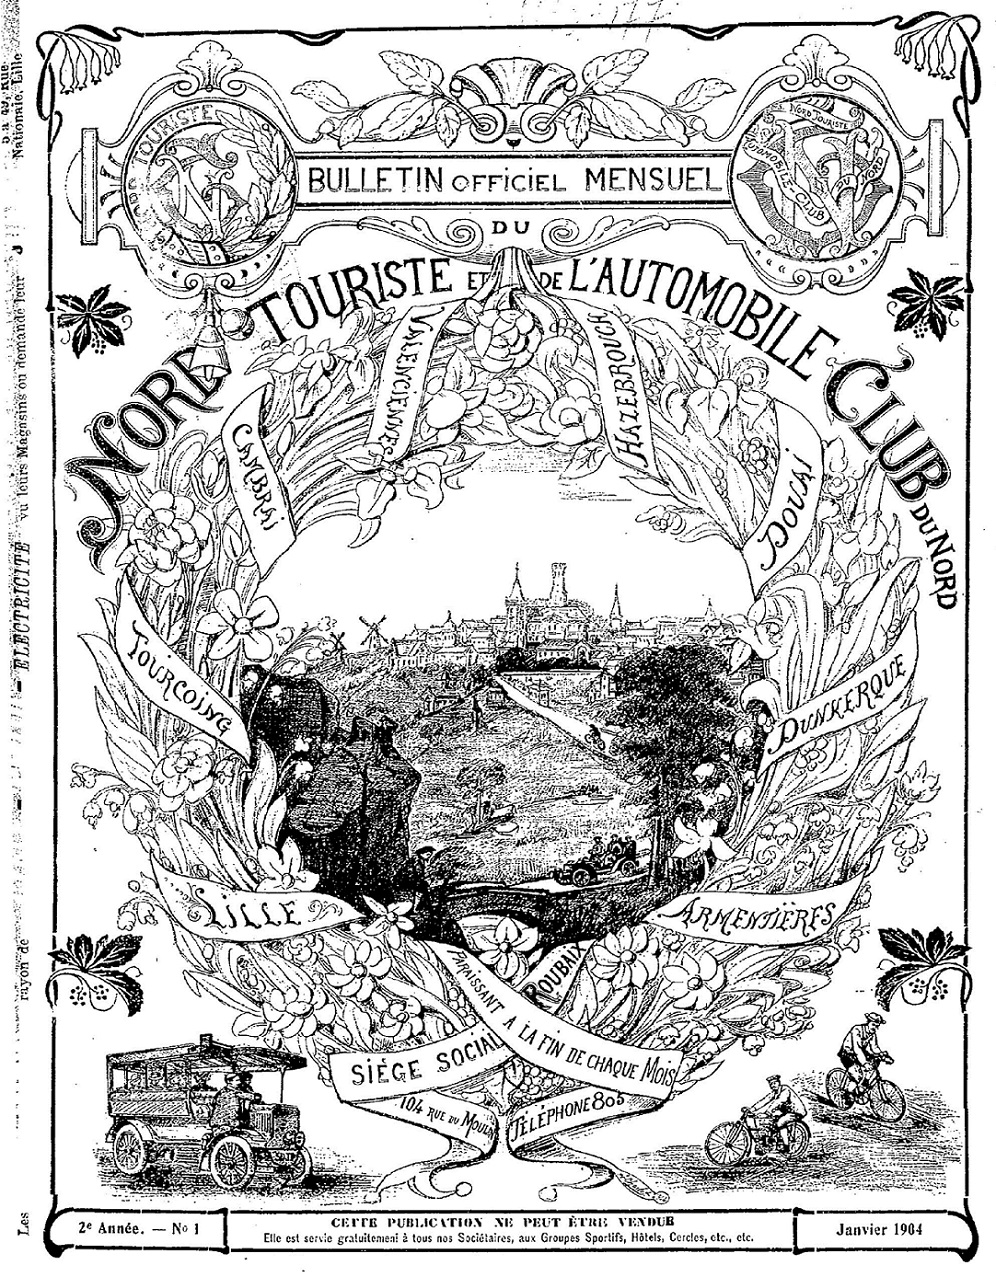 Photo (BnF / Gallica) de : Bulletin officiel mensuel du Nord-touriste et de l'Automobile-club du Nord. Roubaix, 1903-1924. ISSN 2824-3404.